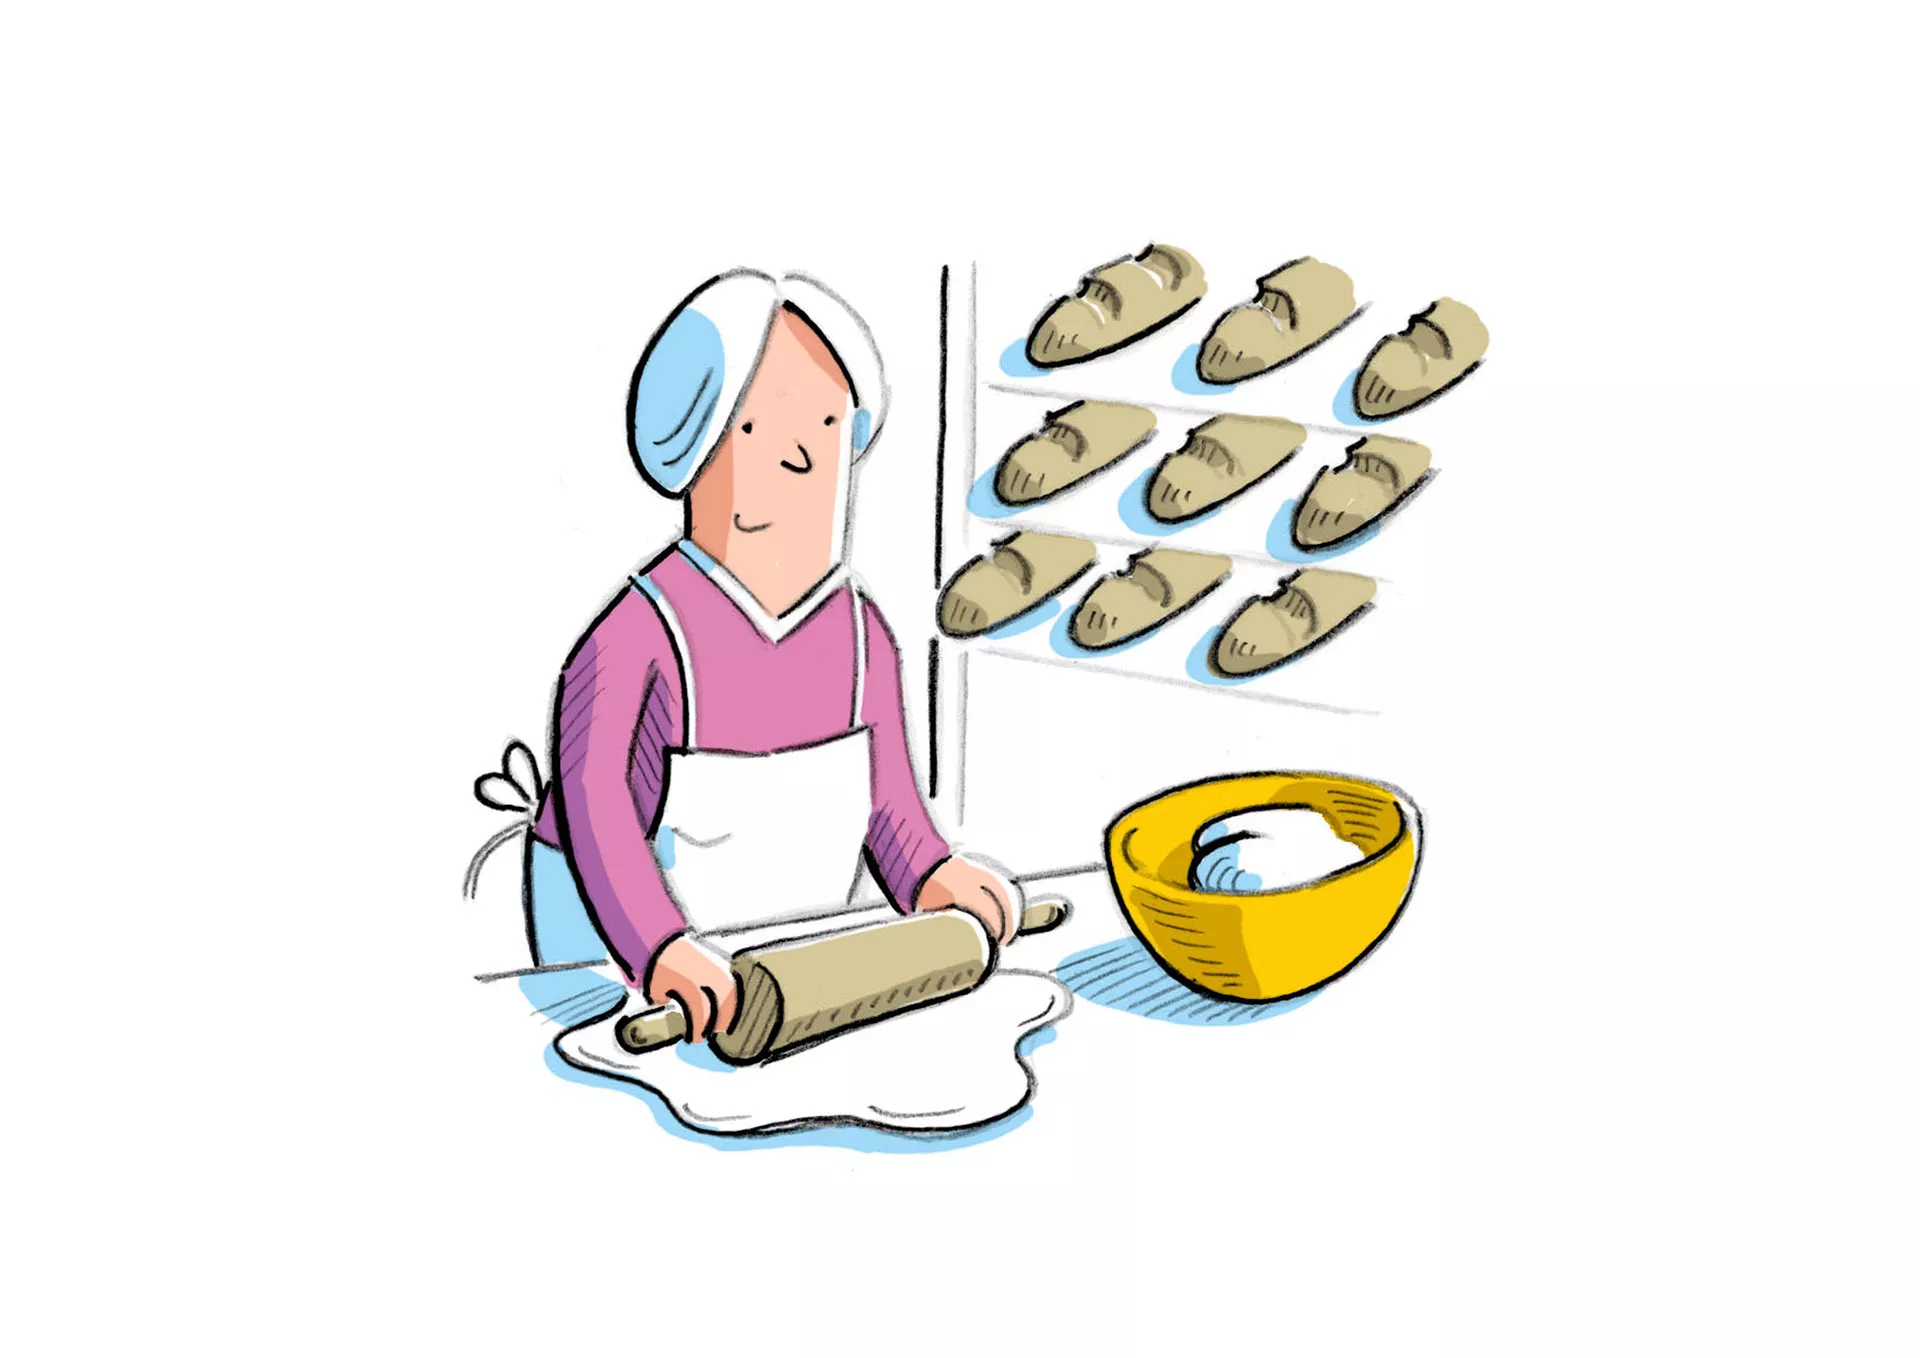 Bild: Eine Frau rollt den Teig für Brote aus; im Hintergrund mehrere Brote im Regal